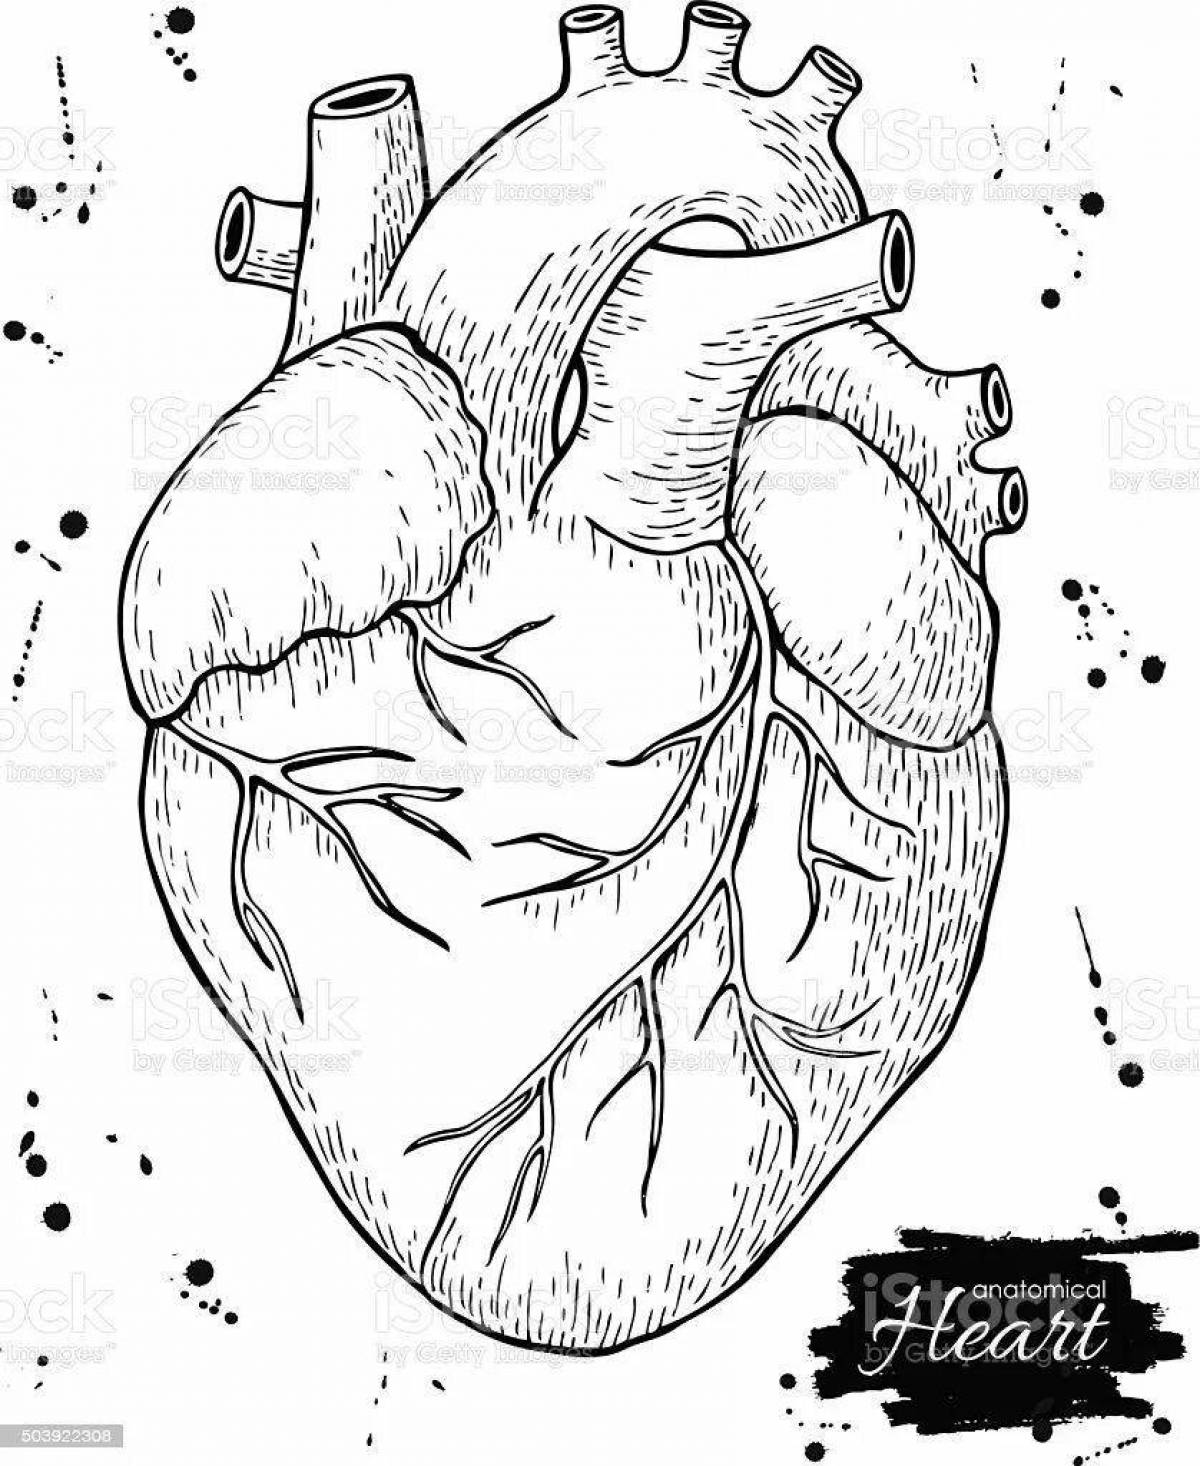 Подробная страница раскраски анатомического сердца